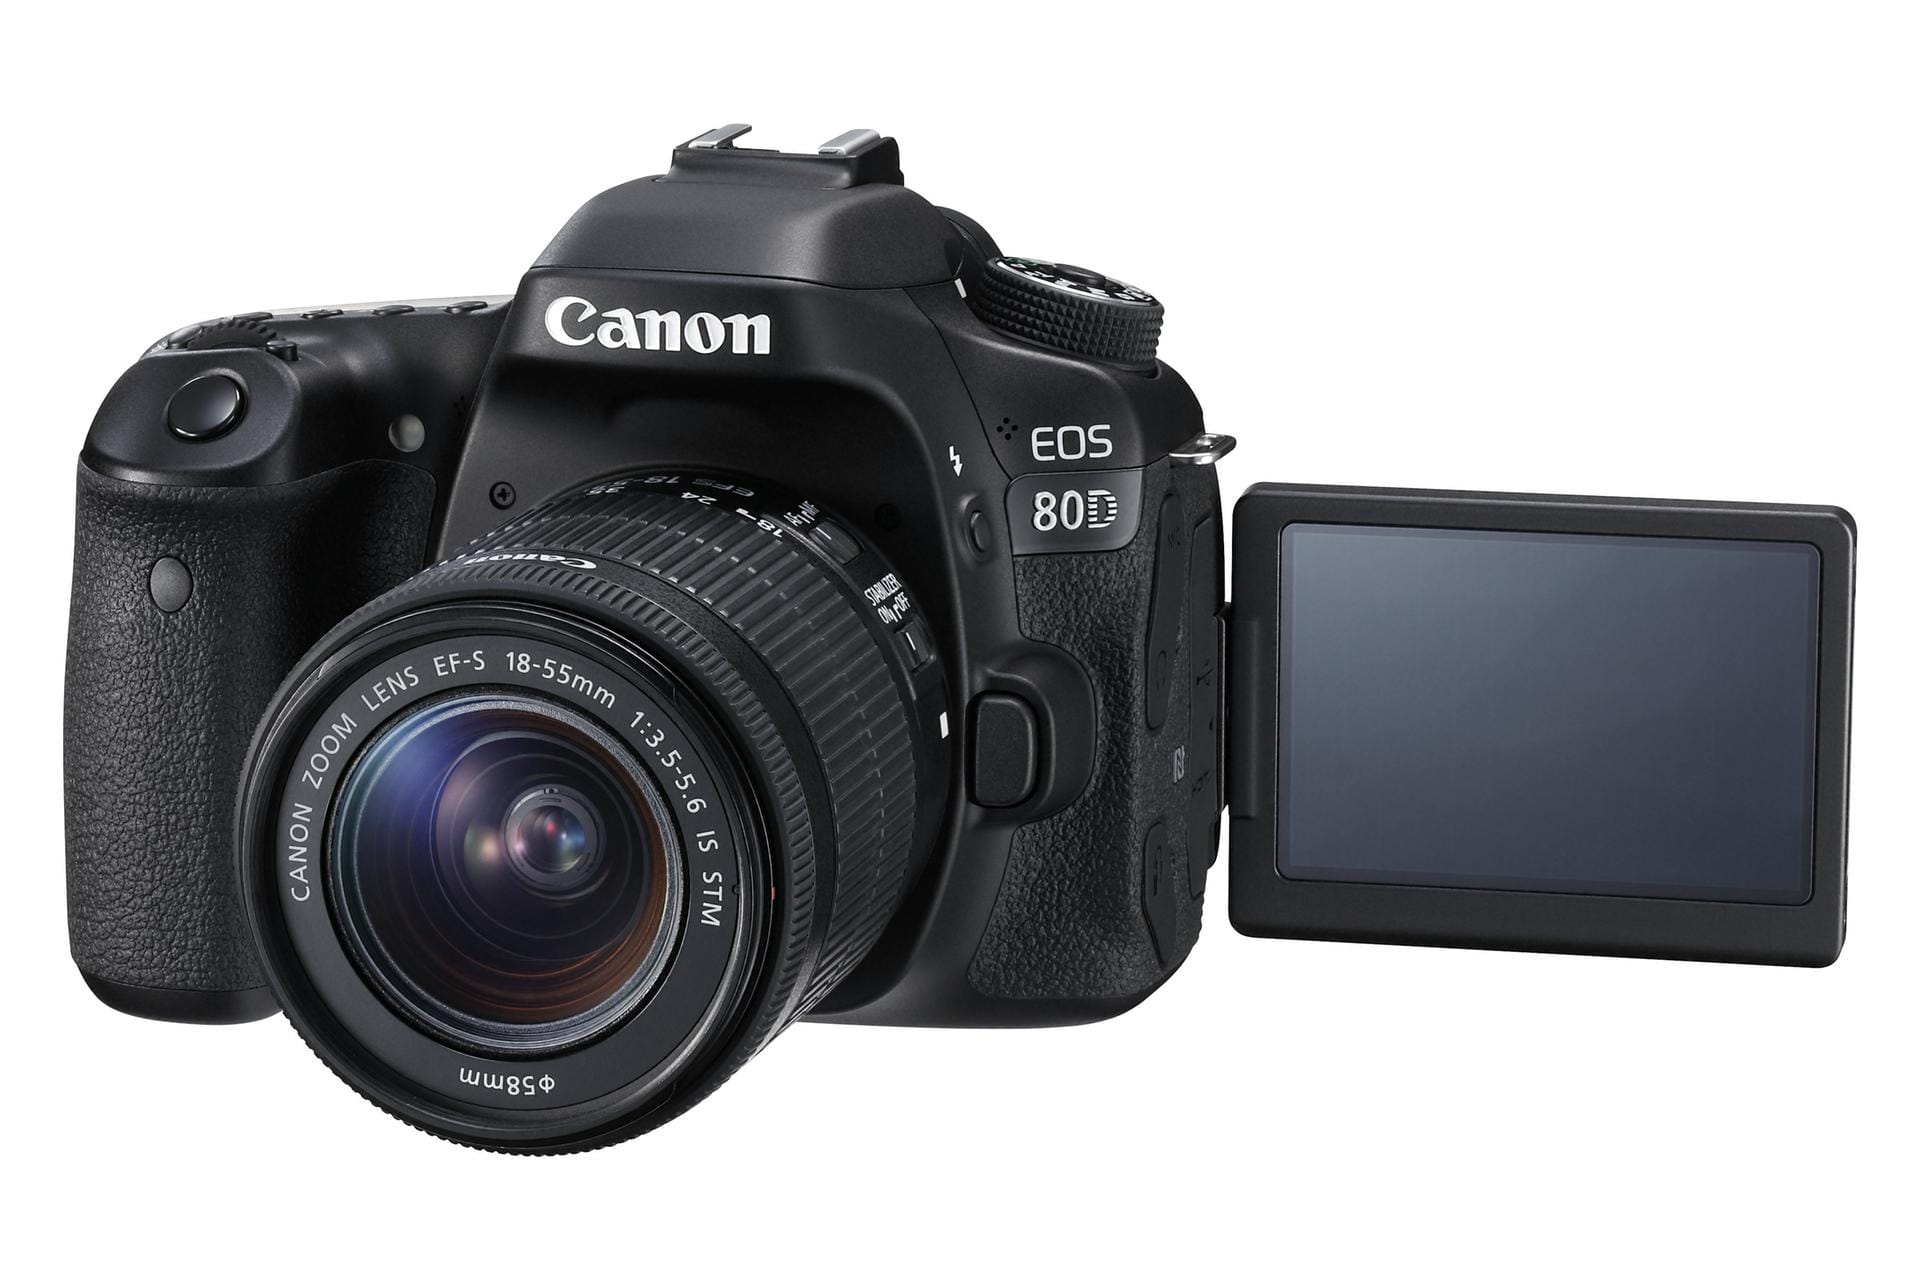 Die Canon EOS 80D erhielt den Award für die beste DSLR-Kamera.